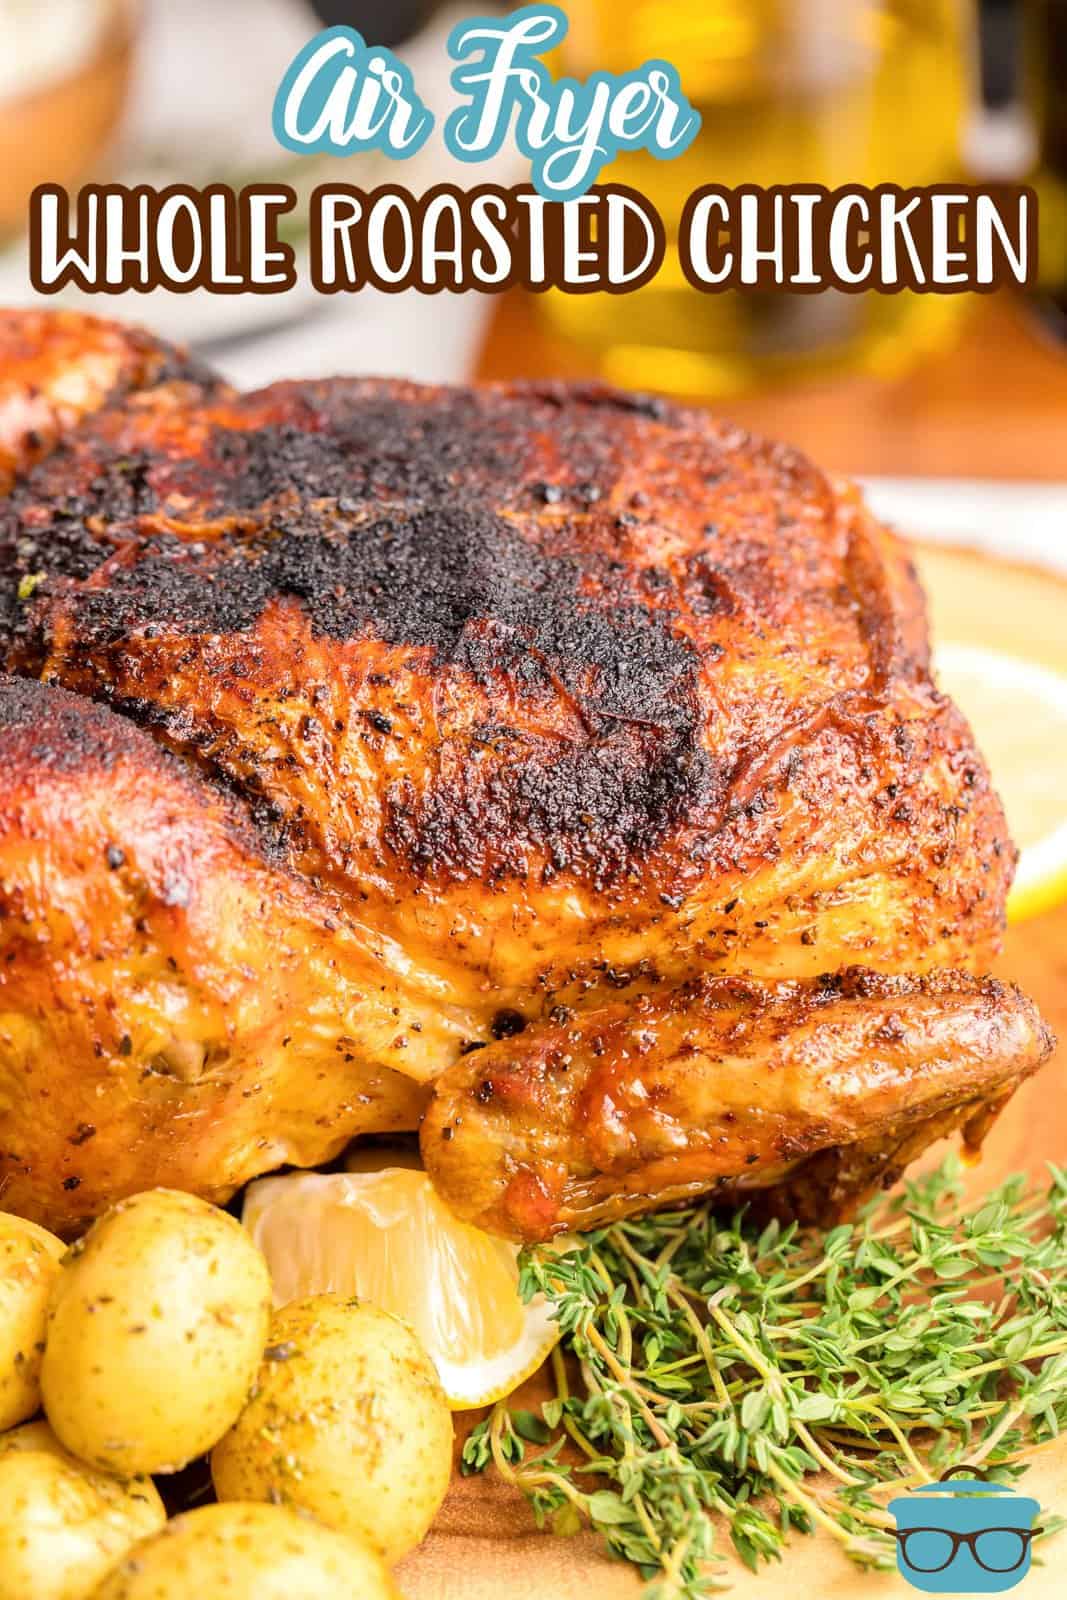 Immagine Pinterest che mostra pollo arrosto intero con friggitrice ad aria con patate ed erbe aromatiche.